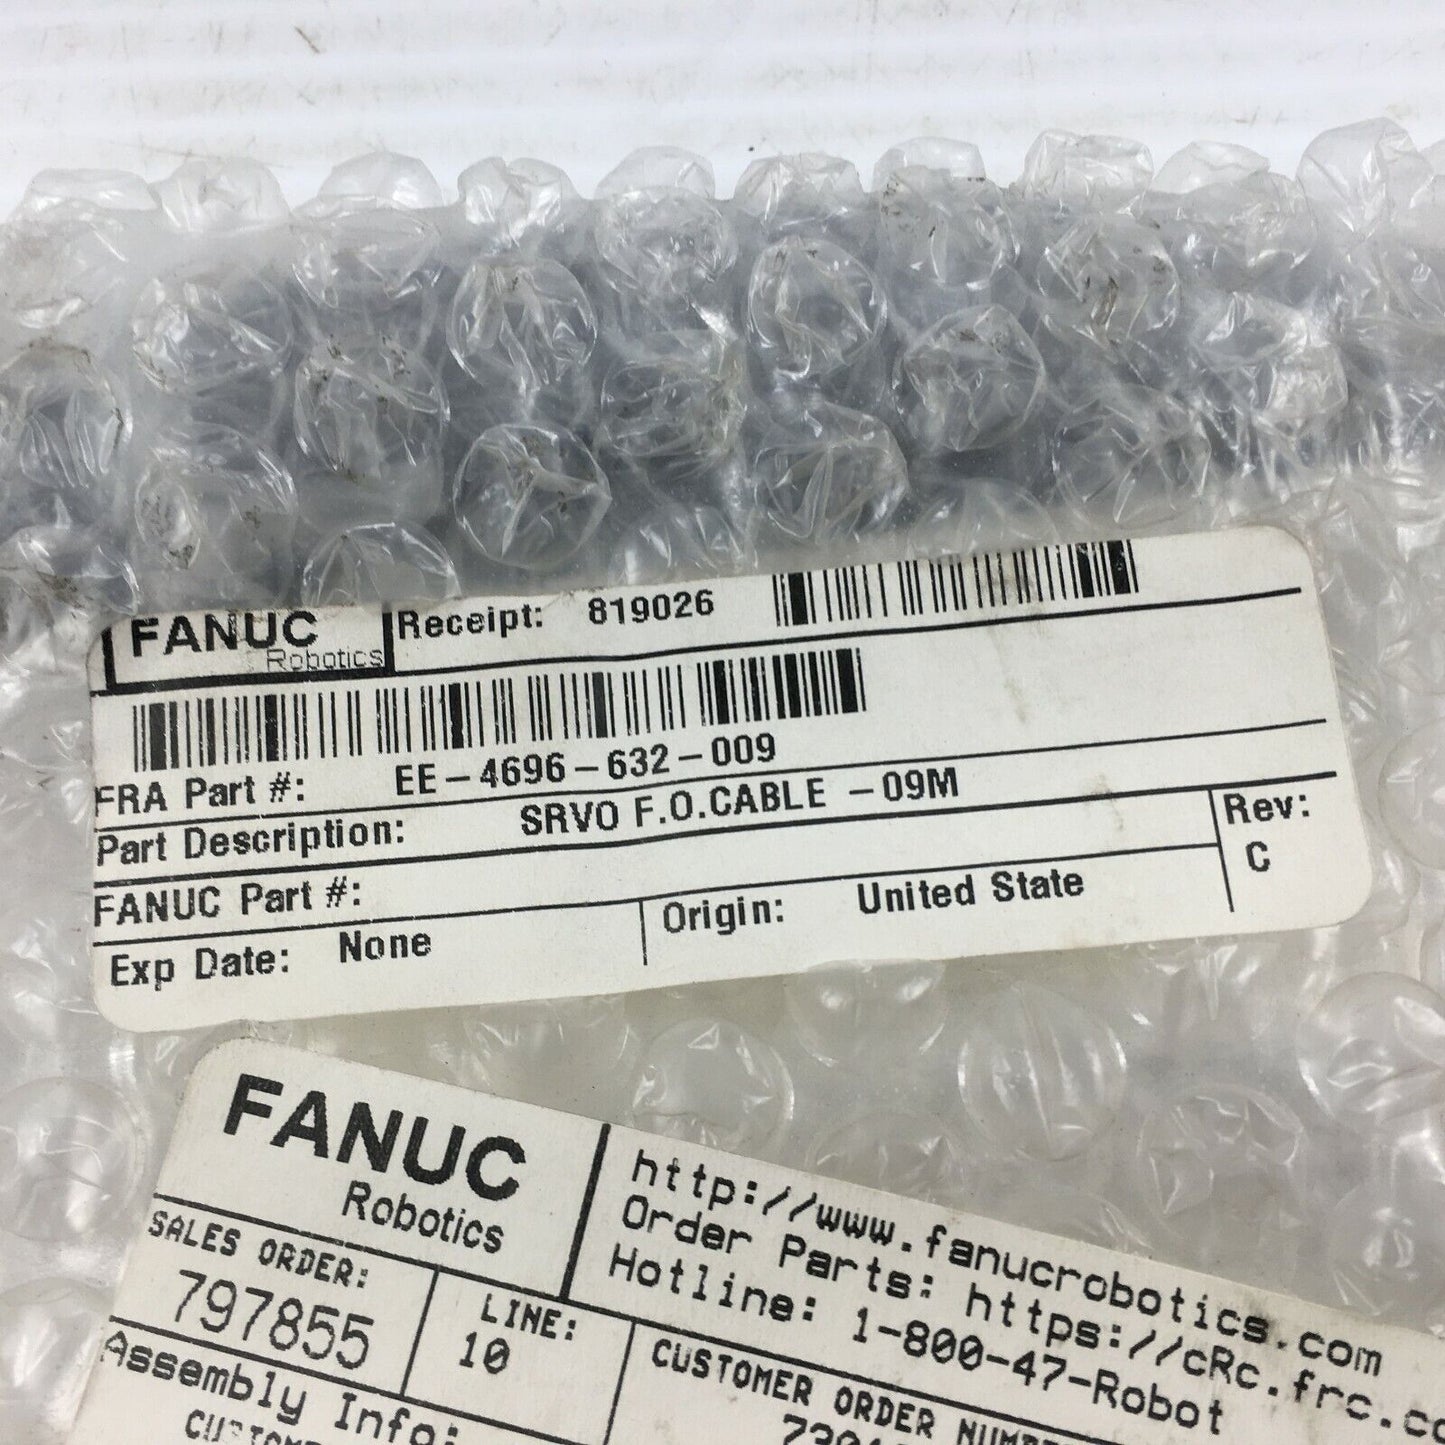 Fanuc Robotics EE-4696-632-009 CABLE